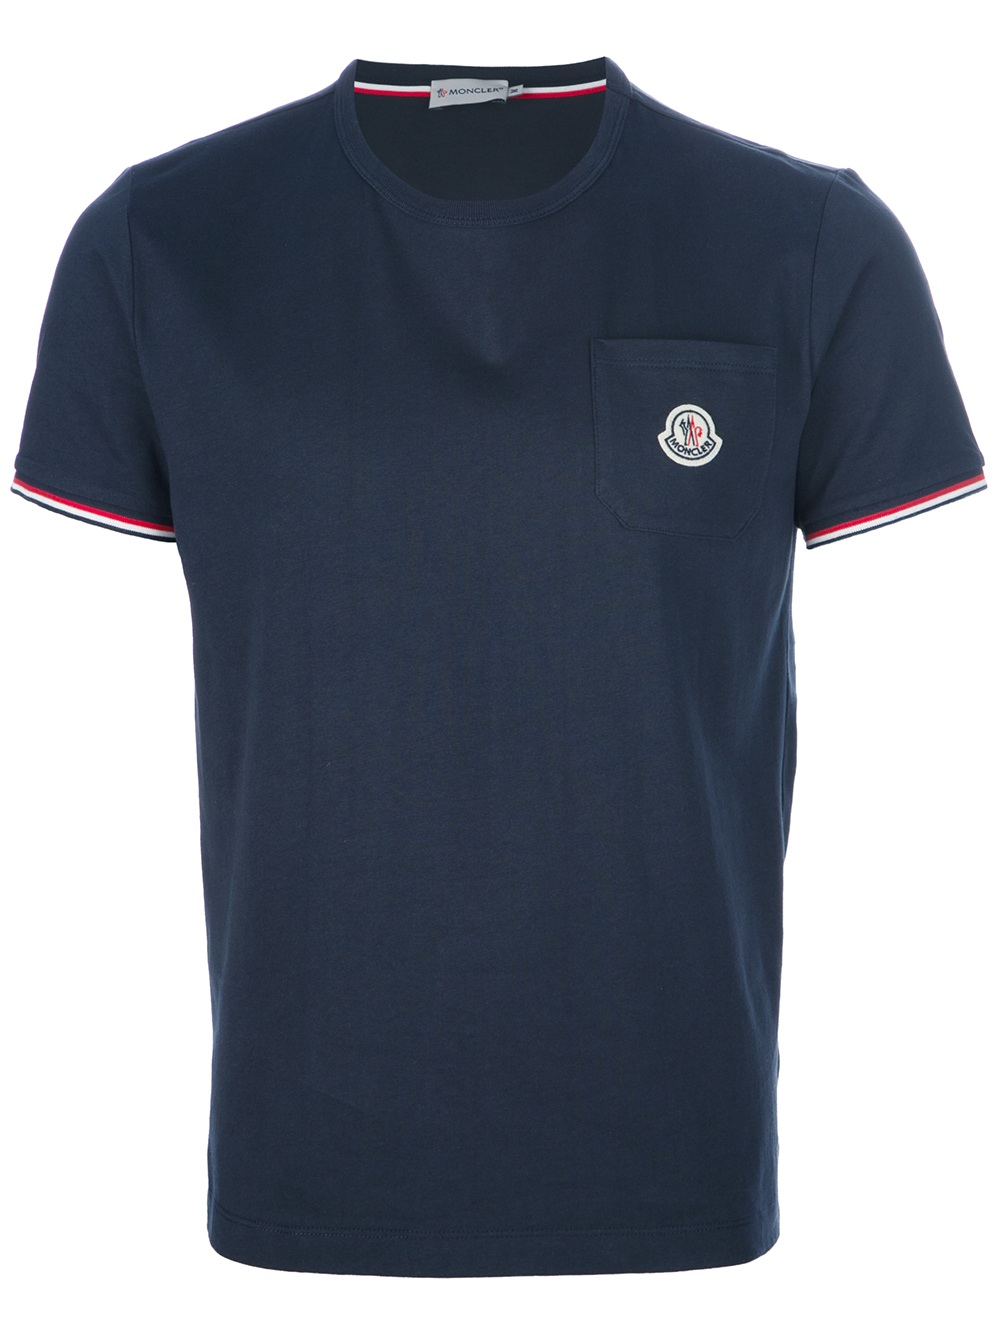 Moncler Logo Pocket Tshirt in Blue for Men - Lyst